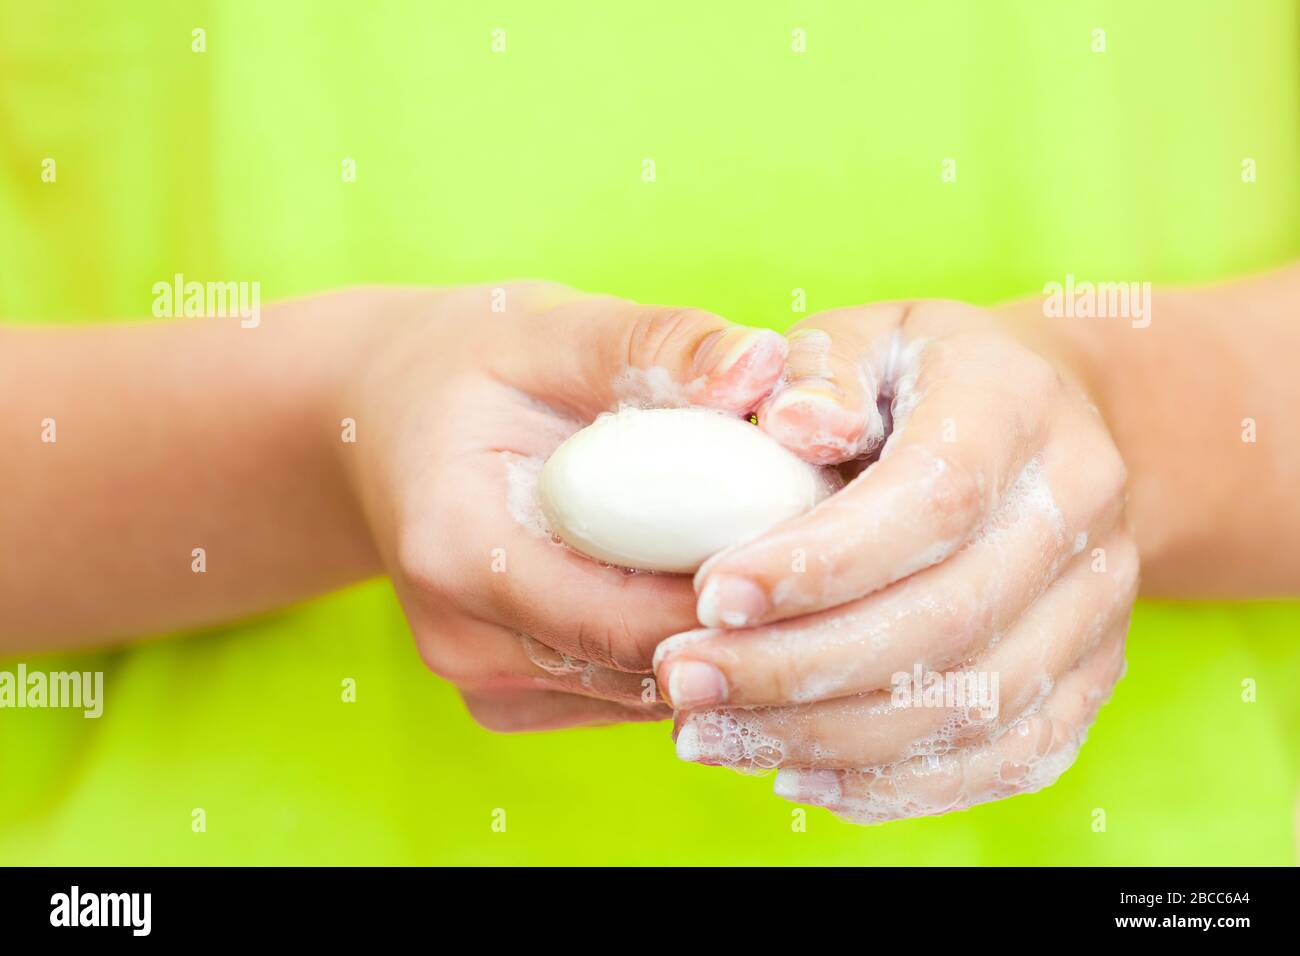 Vista frontal en manos de mujeres con espuma de jabón, concepto de higiene personal Foto de stock